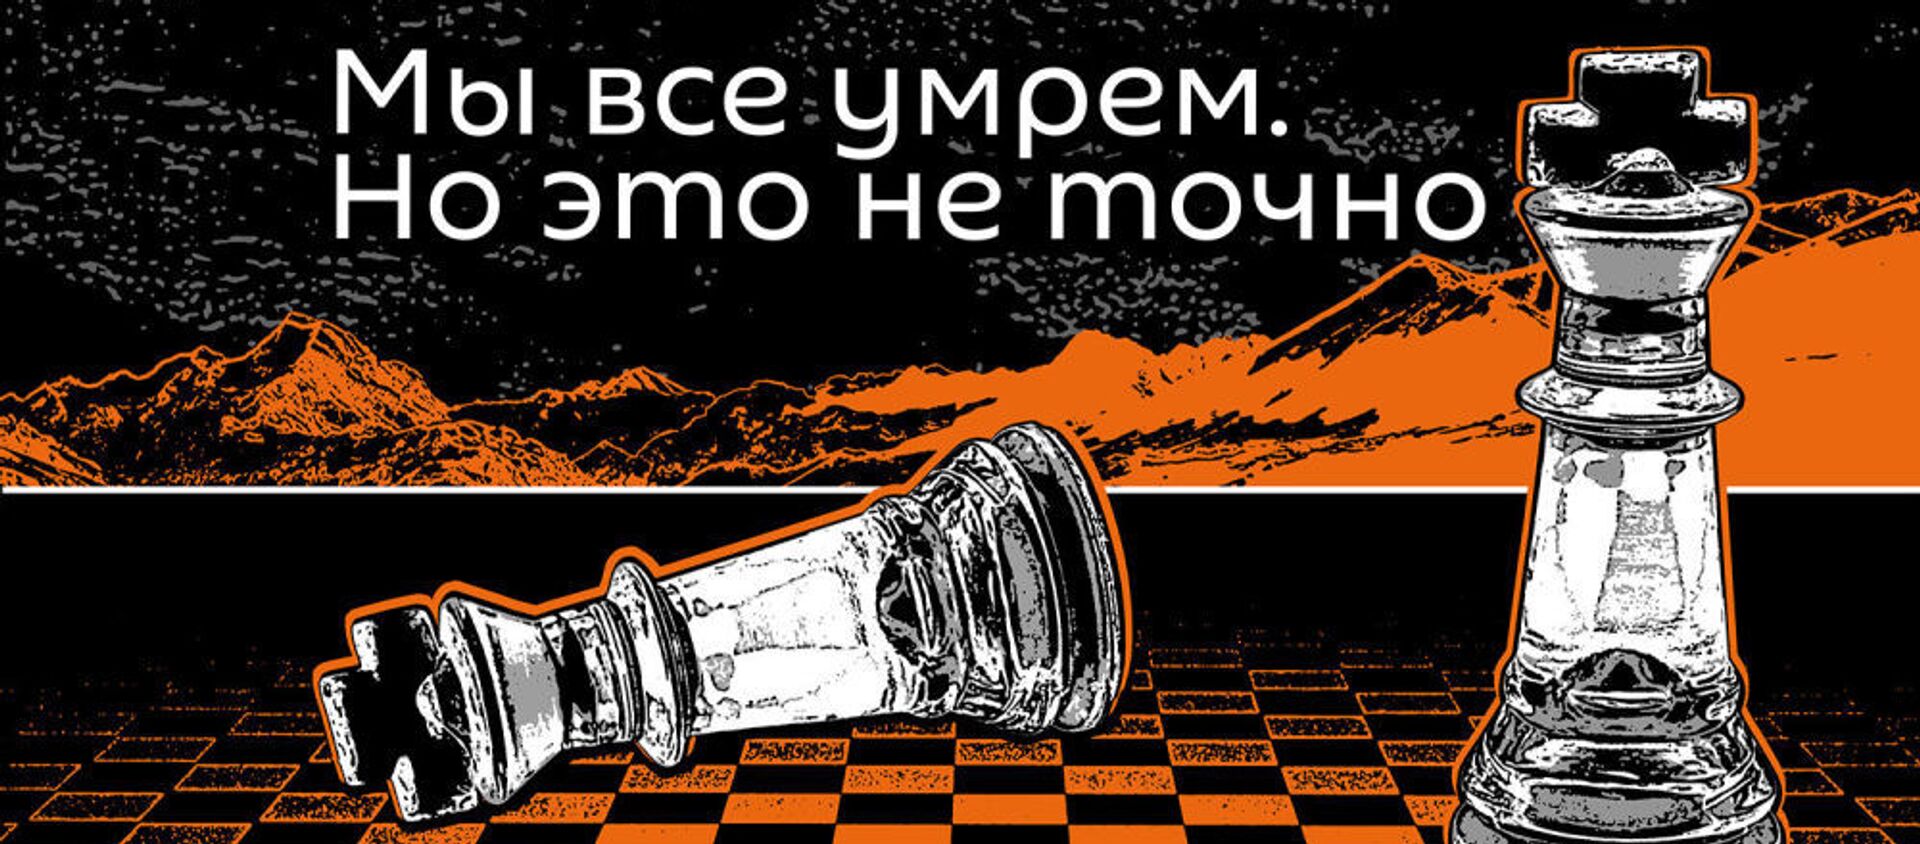 Мы все умрем - Sputnik Армения, 1920, 01.12.2019